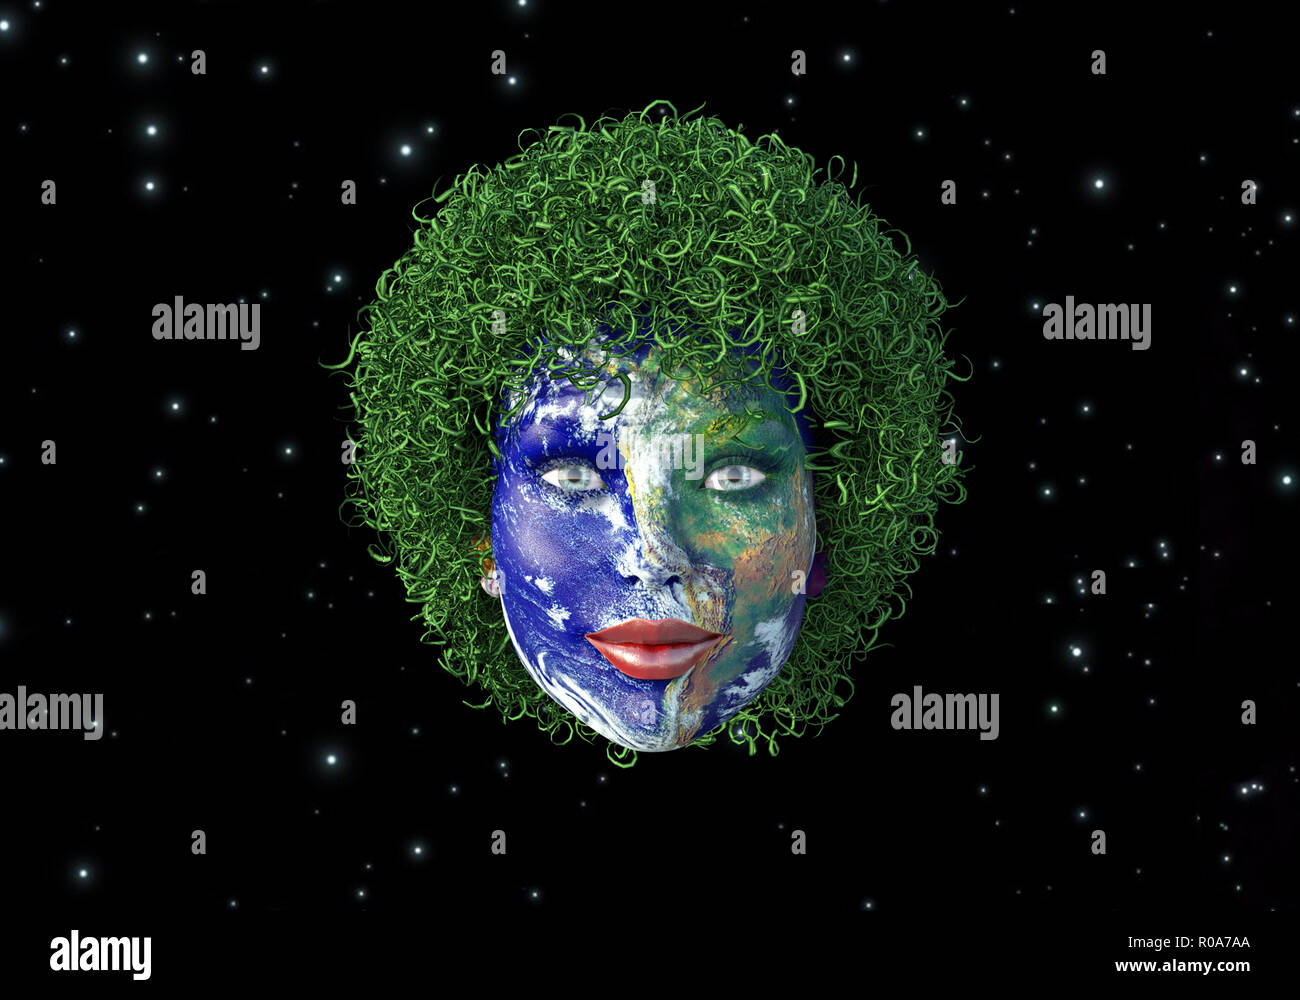 La madre tierra, cara de mujer representando a la Madre Naturaleza en el espacio Foto de stock